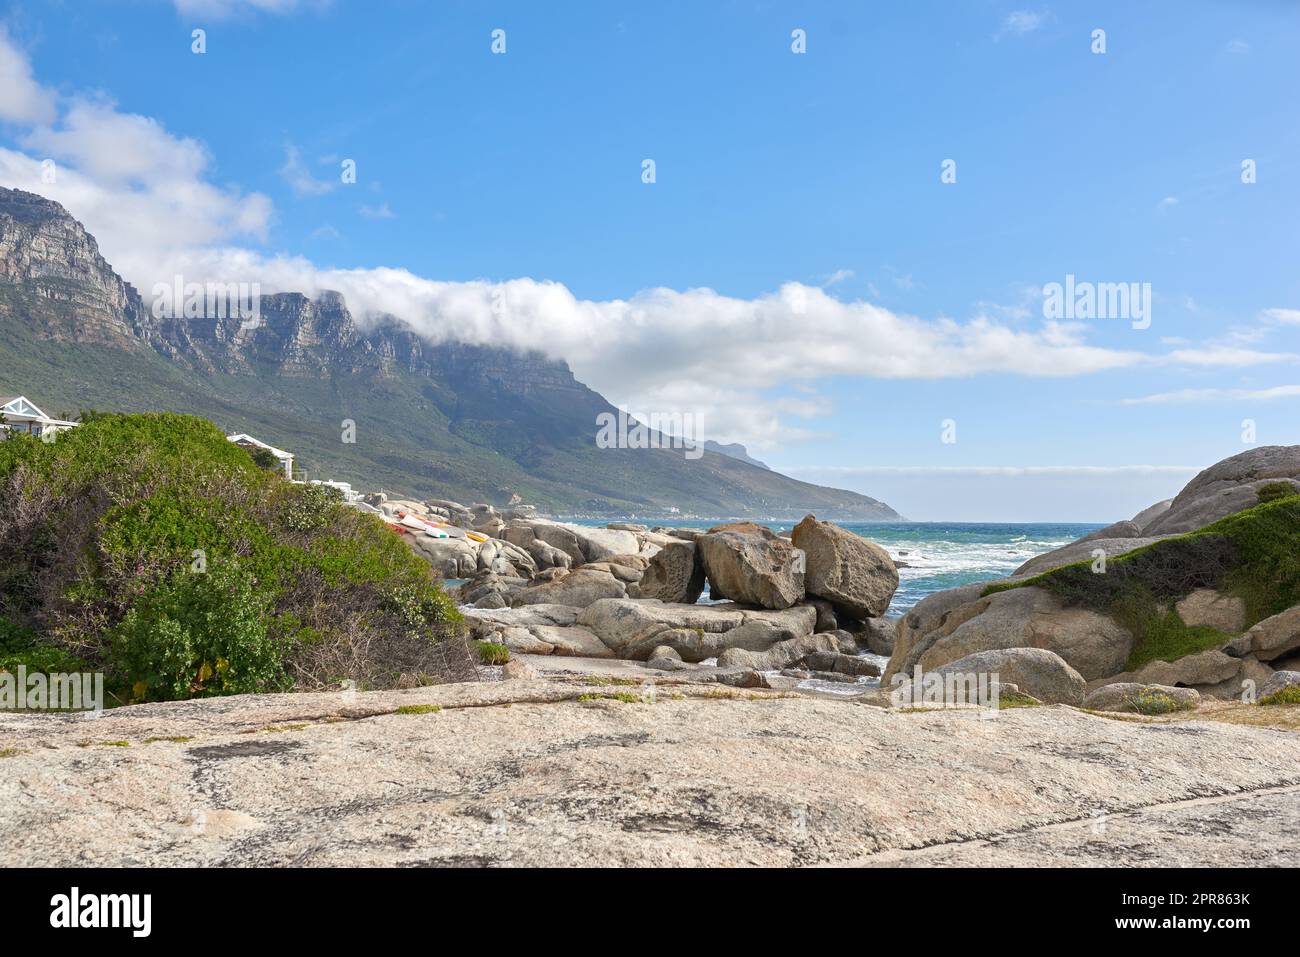 Magnifique paysage de camps Bay au Cap, Afrique du Sud. Montagnes pittoresques et rochers près de l'océan ou de la mer avec un fond bleu ciel. Nature paisible à la plage avec paysage marin pendant une journée d'été Banque D'Images